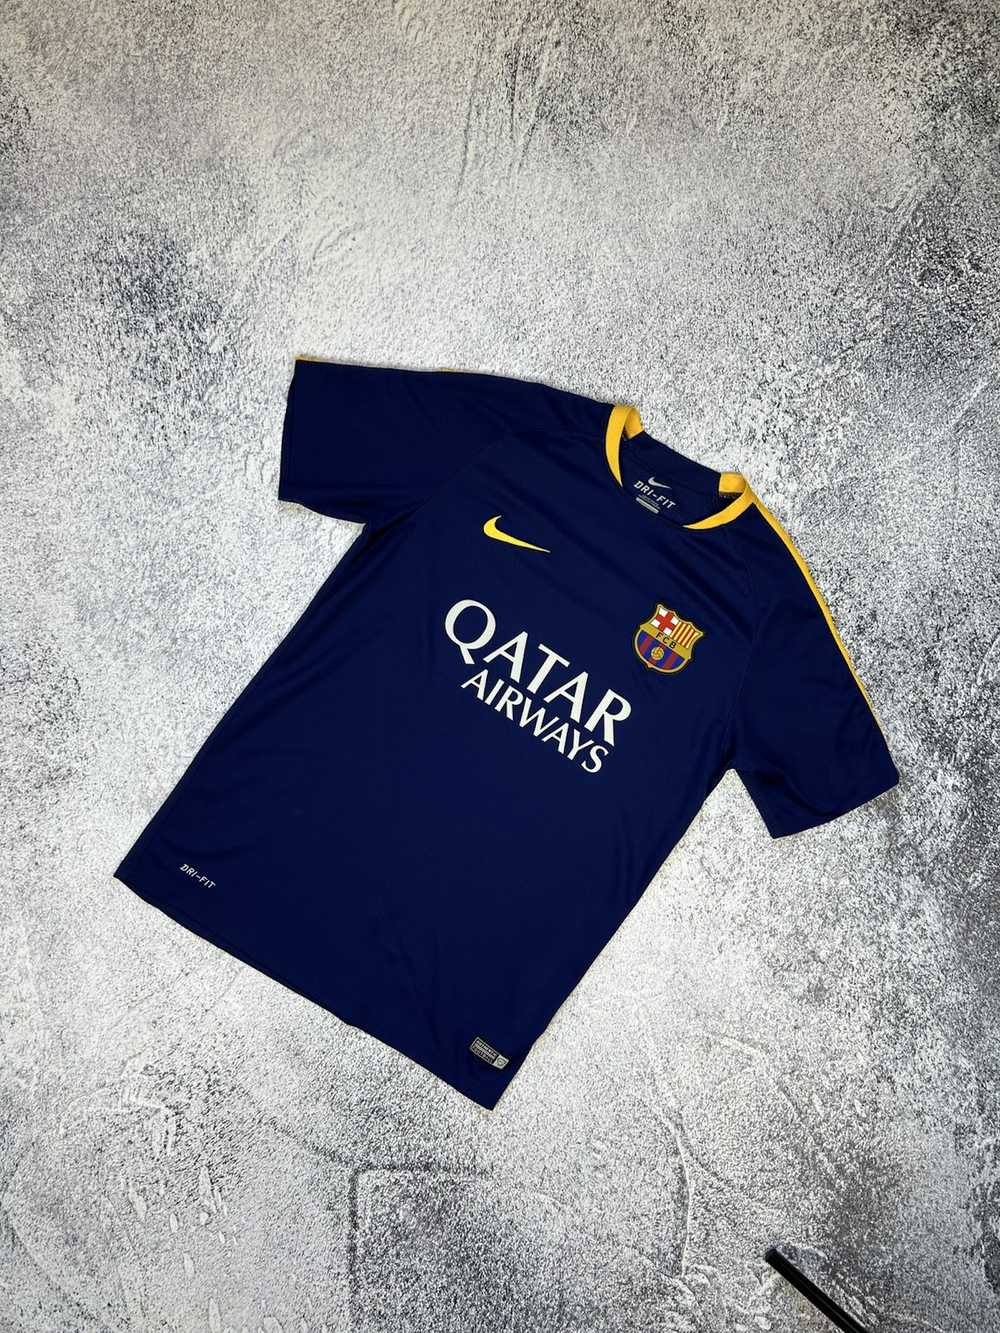 F.C. Barcelona × Nike × Soccer Jersey Mens Vintag… - image 1